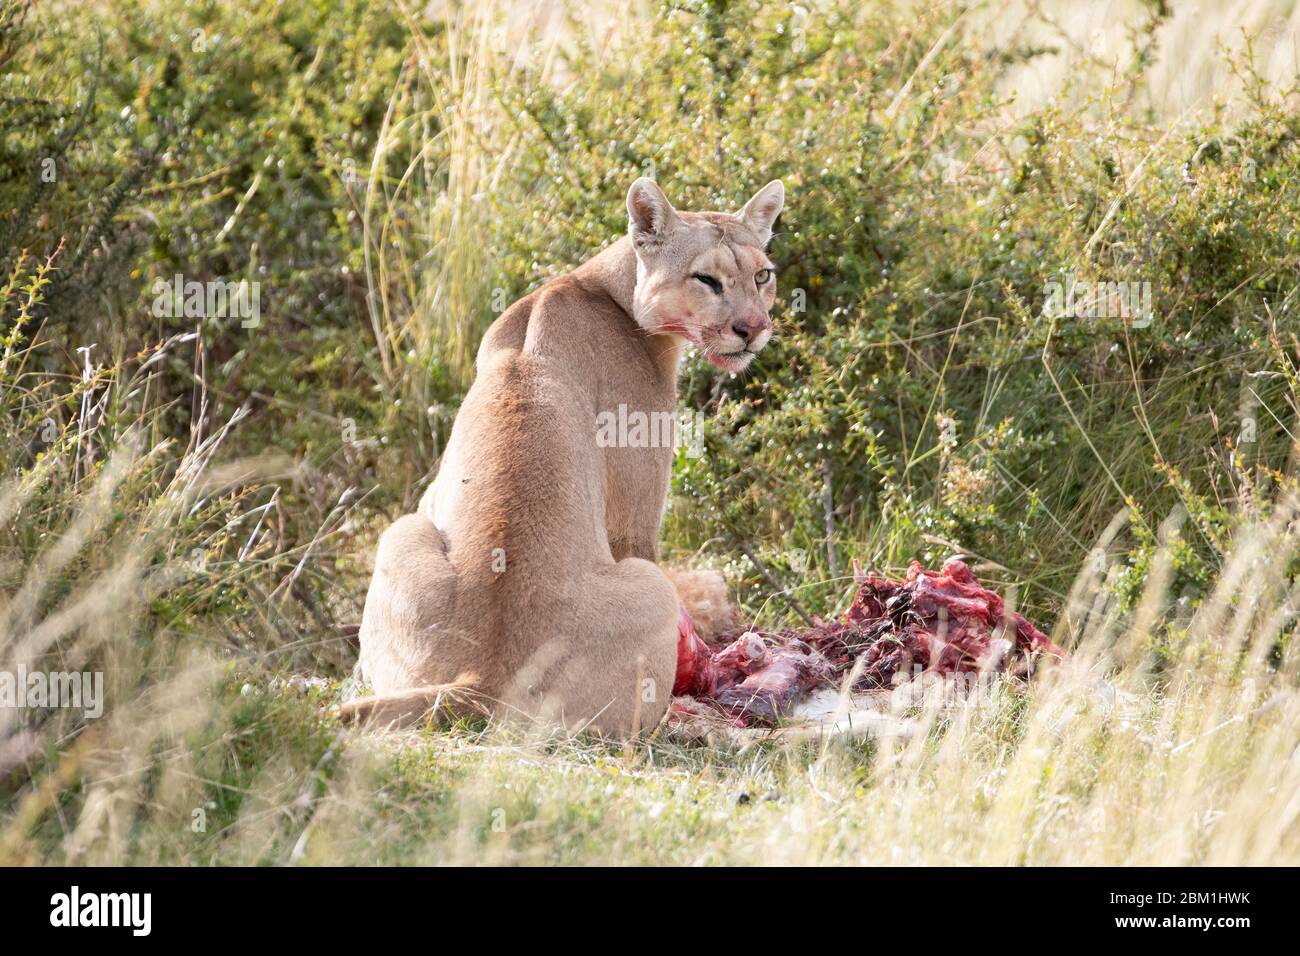 Alleinerziehende weibliche puma füttert von einem Guanaco-Kadaver. Auch bekannt als Cougar oder Berglöwe. Stockfoto